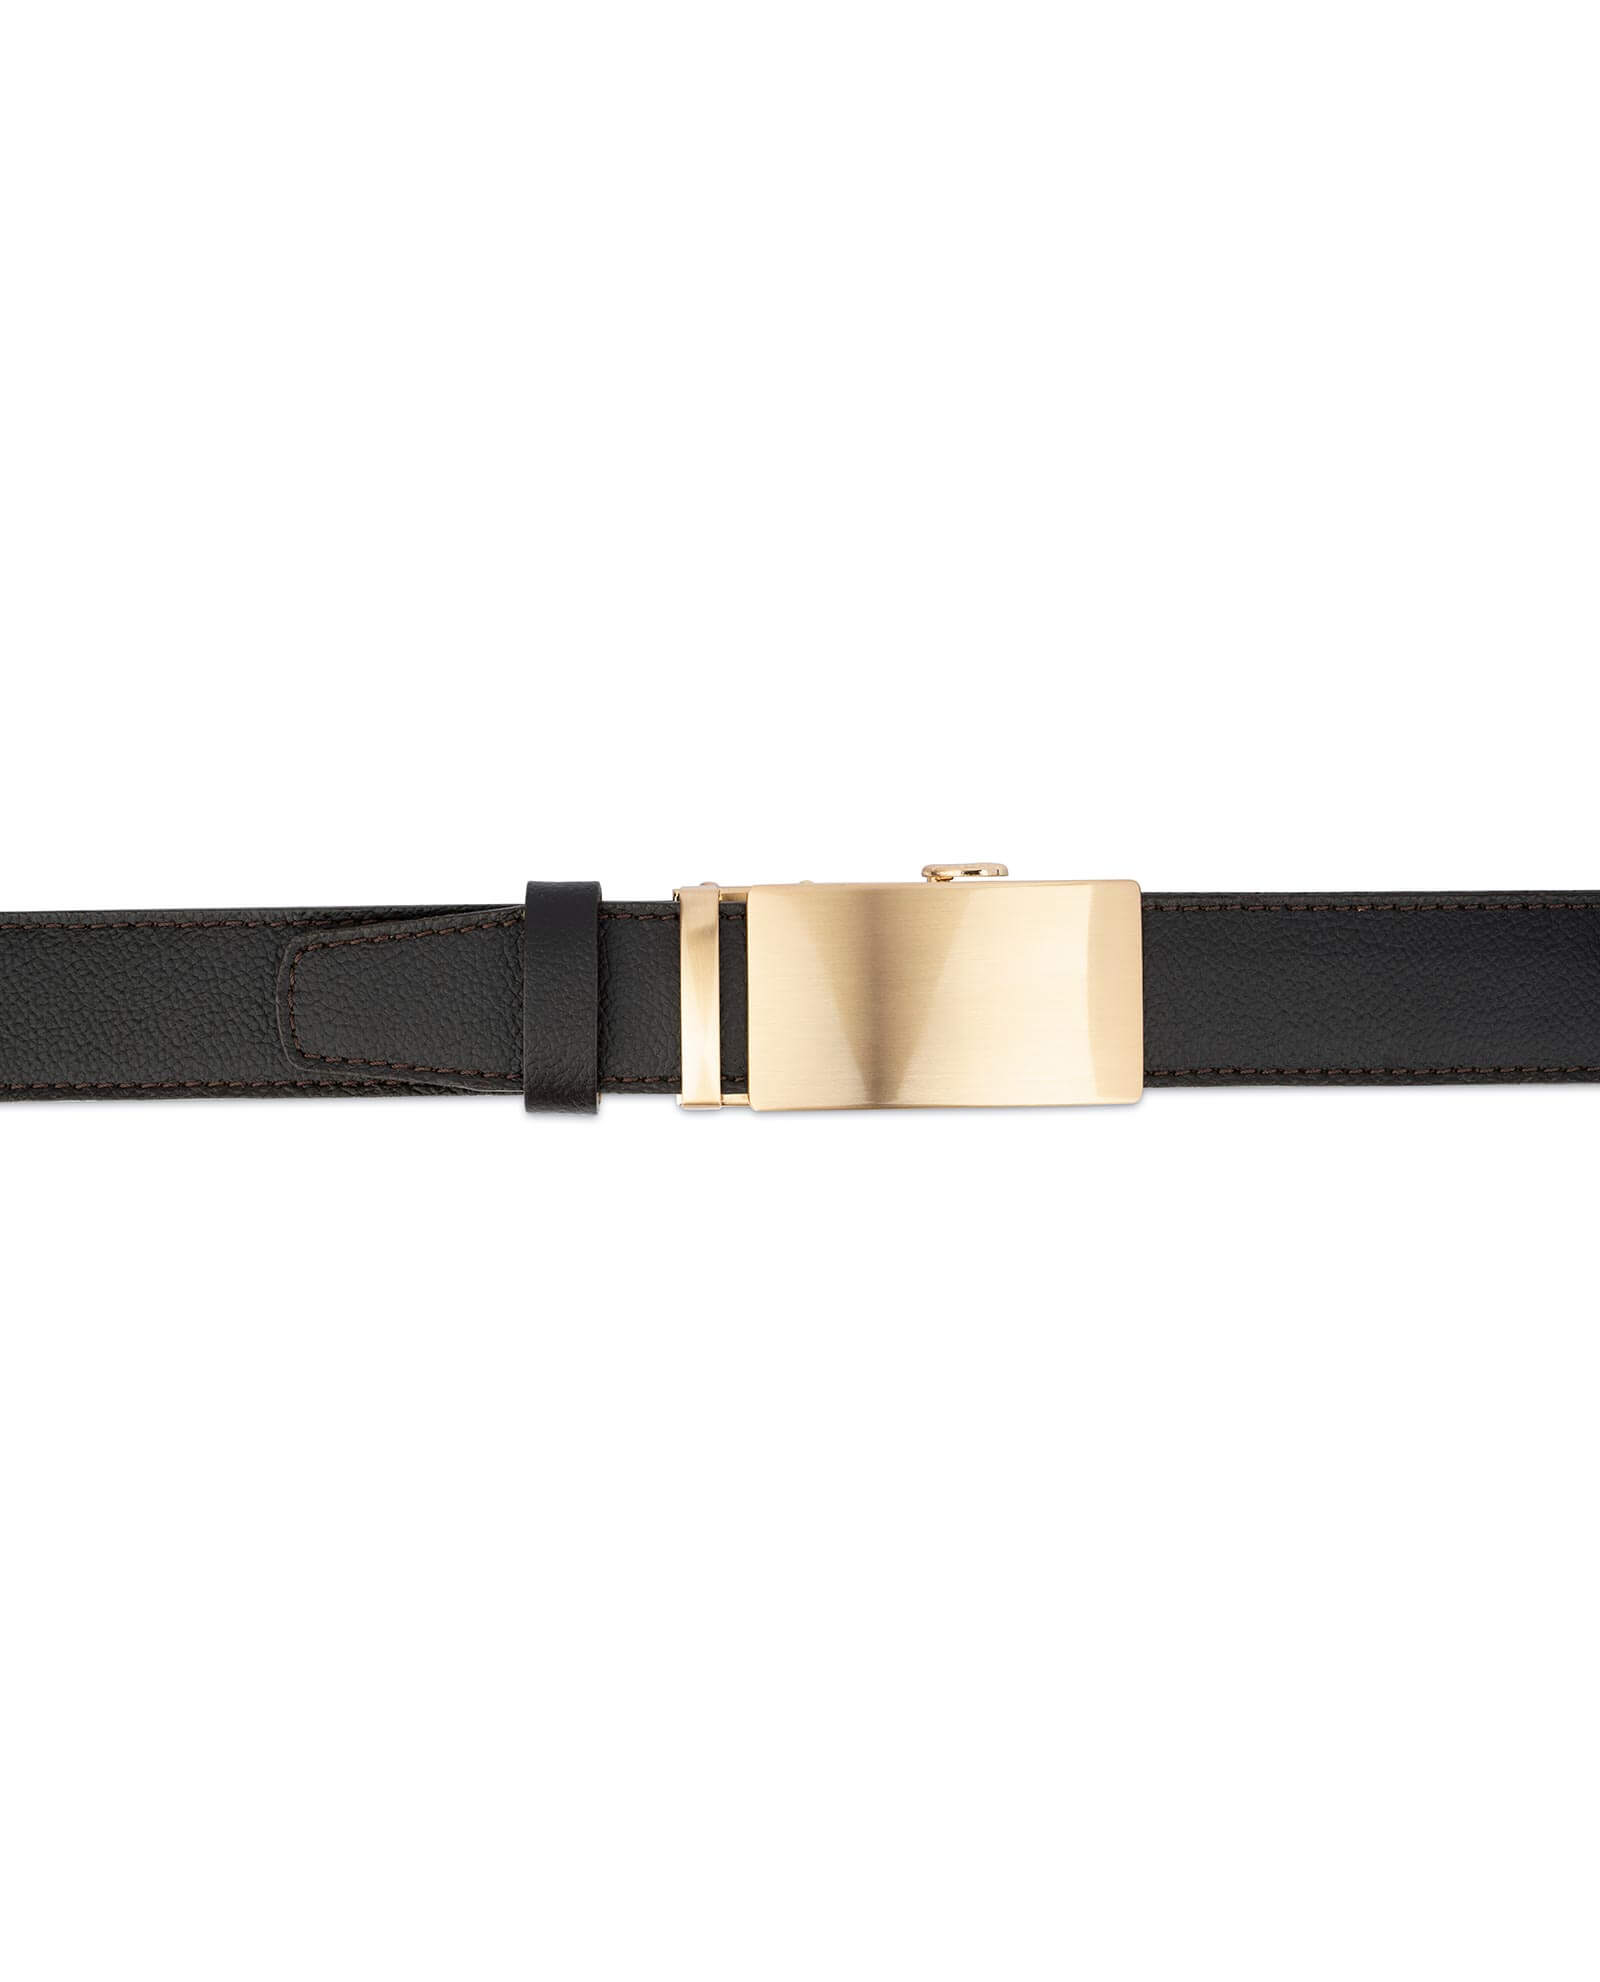 Buy Brown Comfort Click Belt | Gold Buckle | LeatherBeltsOnline.com